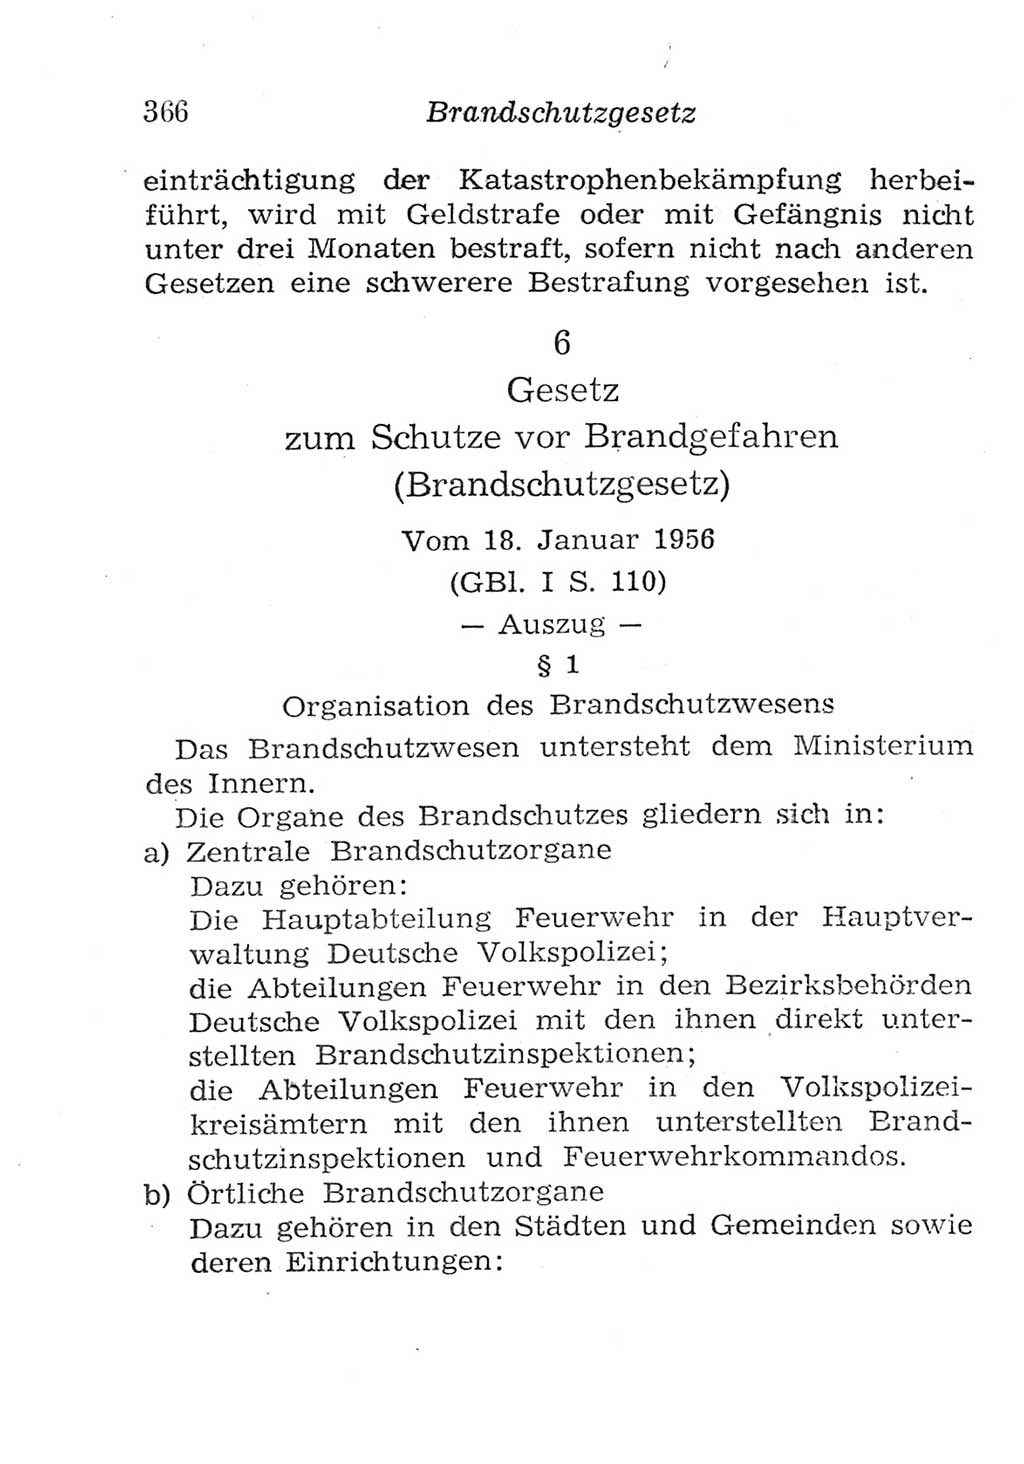 Strafgesetzbuch (StGB) und andere Strafgesetze [Deutsche Demokratische Republik (DDR)] 1957, Seite 366 (StGB Strafges. DDR 1957, S. 366)